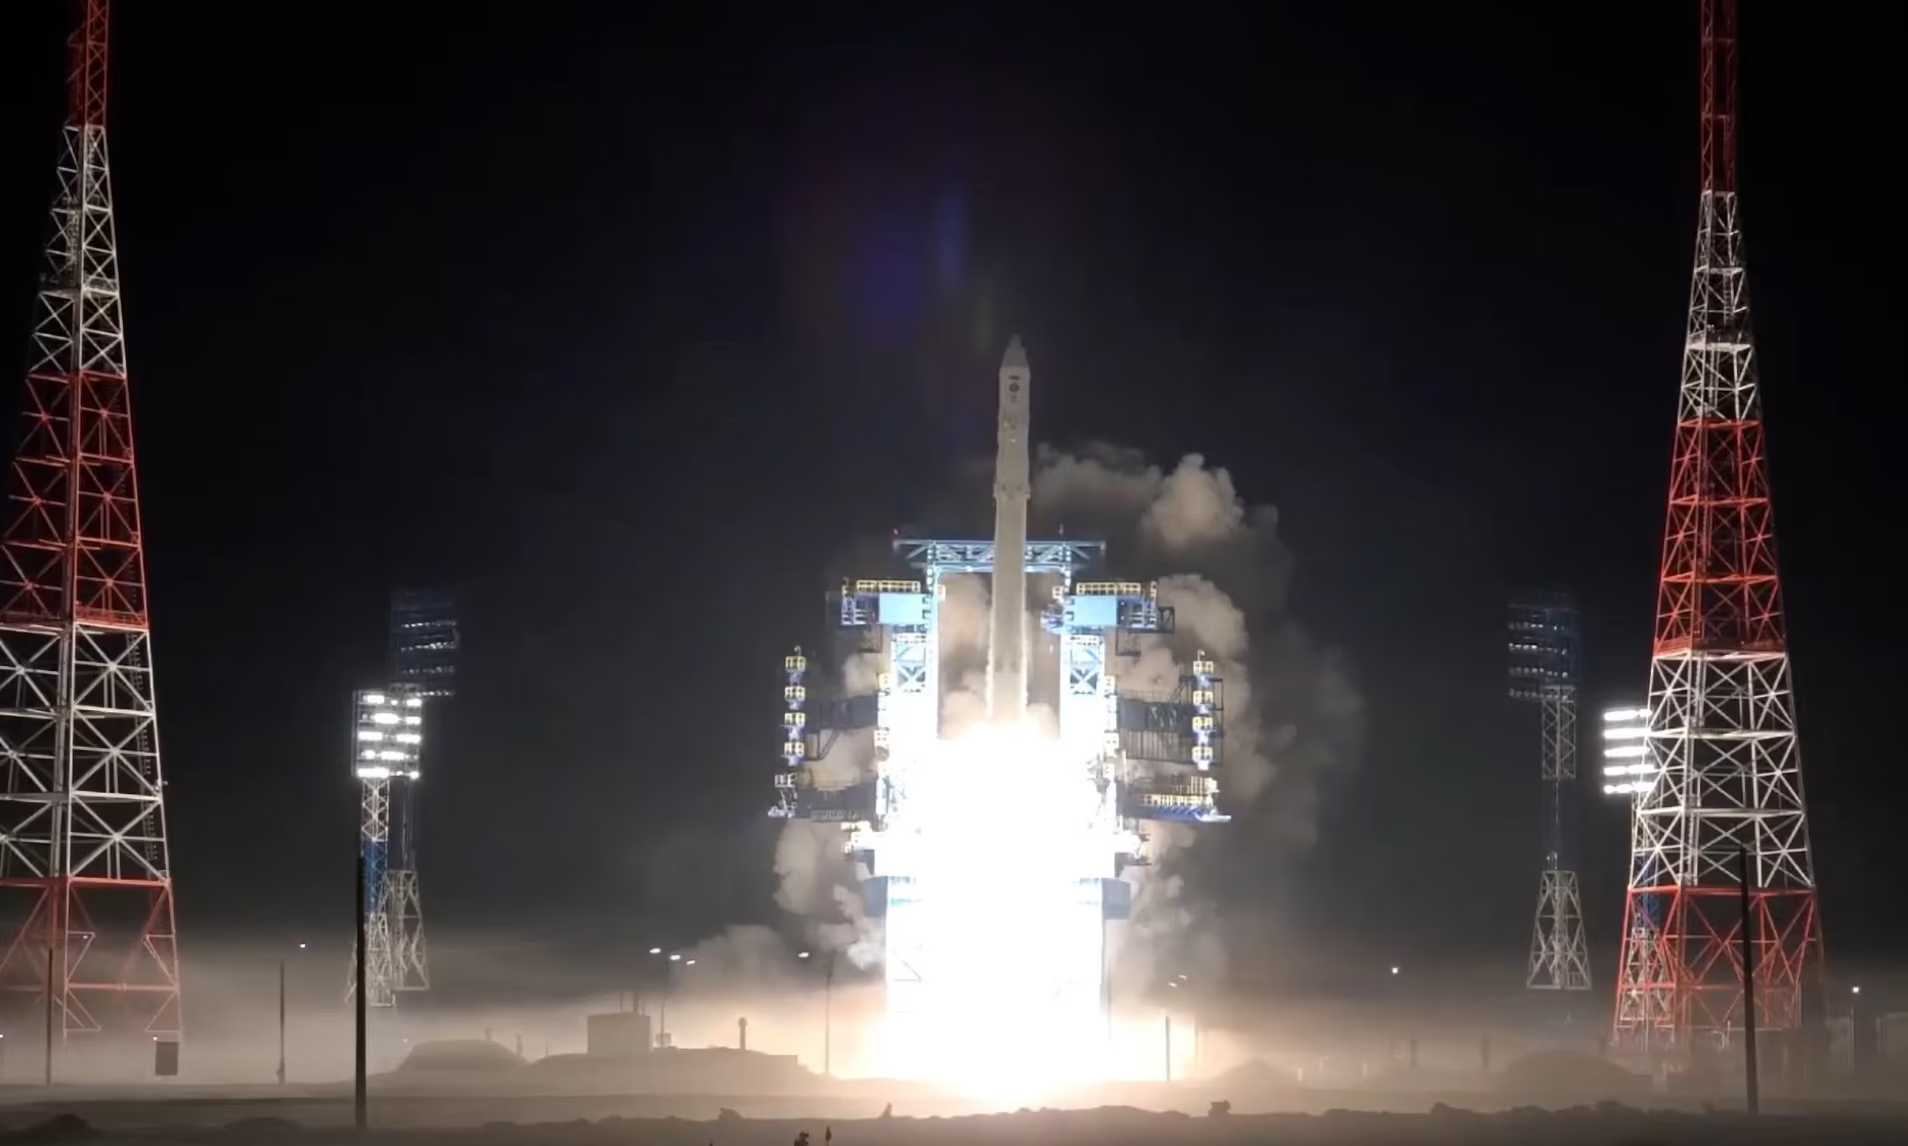 Der russische Militärsatellit Cosmos-2560 wurde de-orbitiert und verglühte in weniger als zwei Monaten nach dem Start